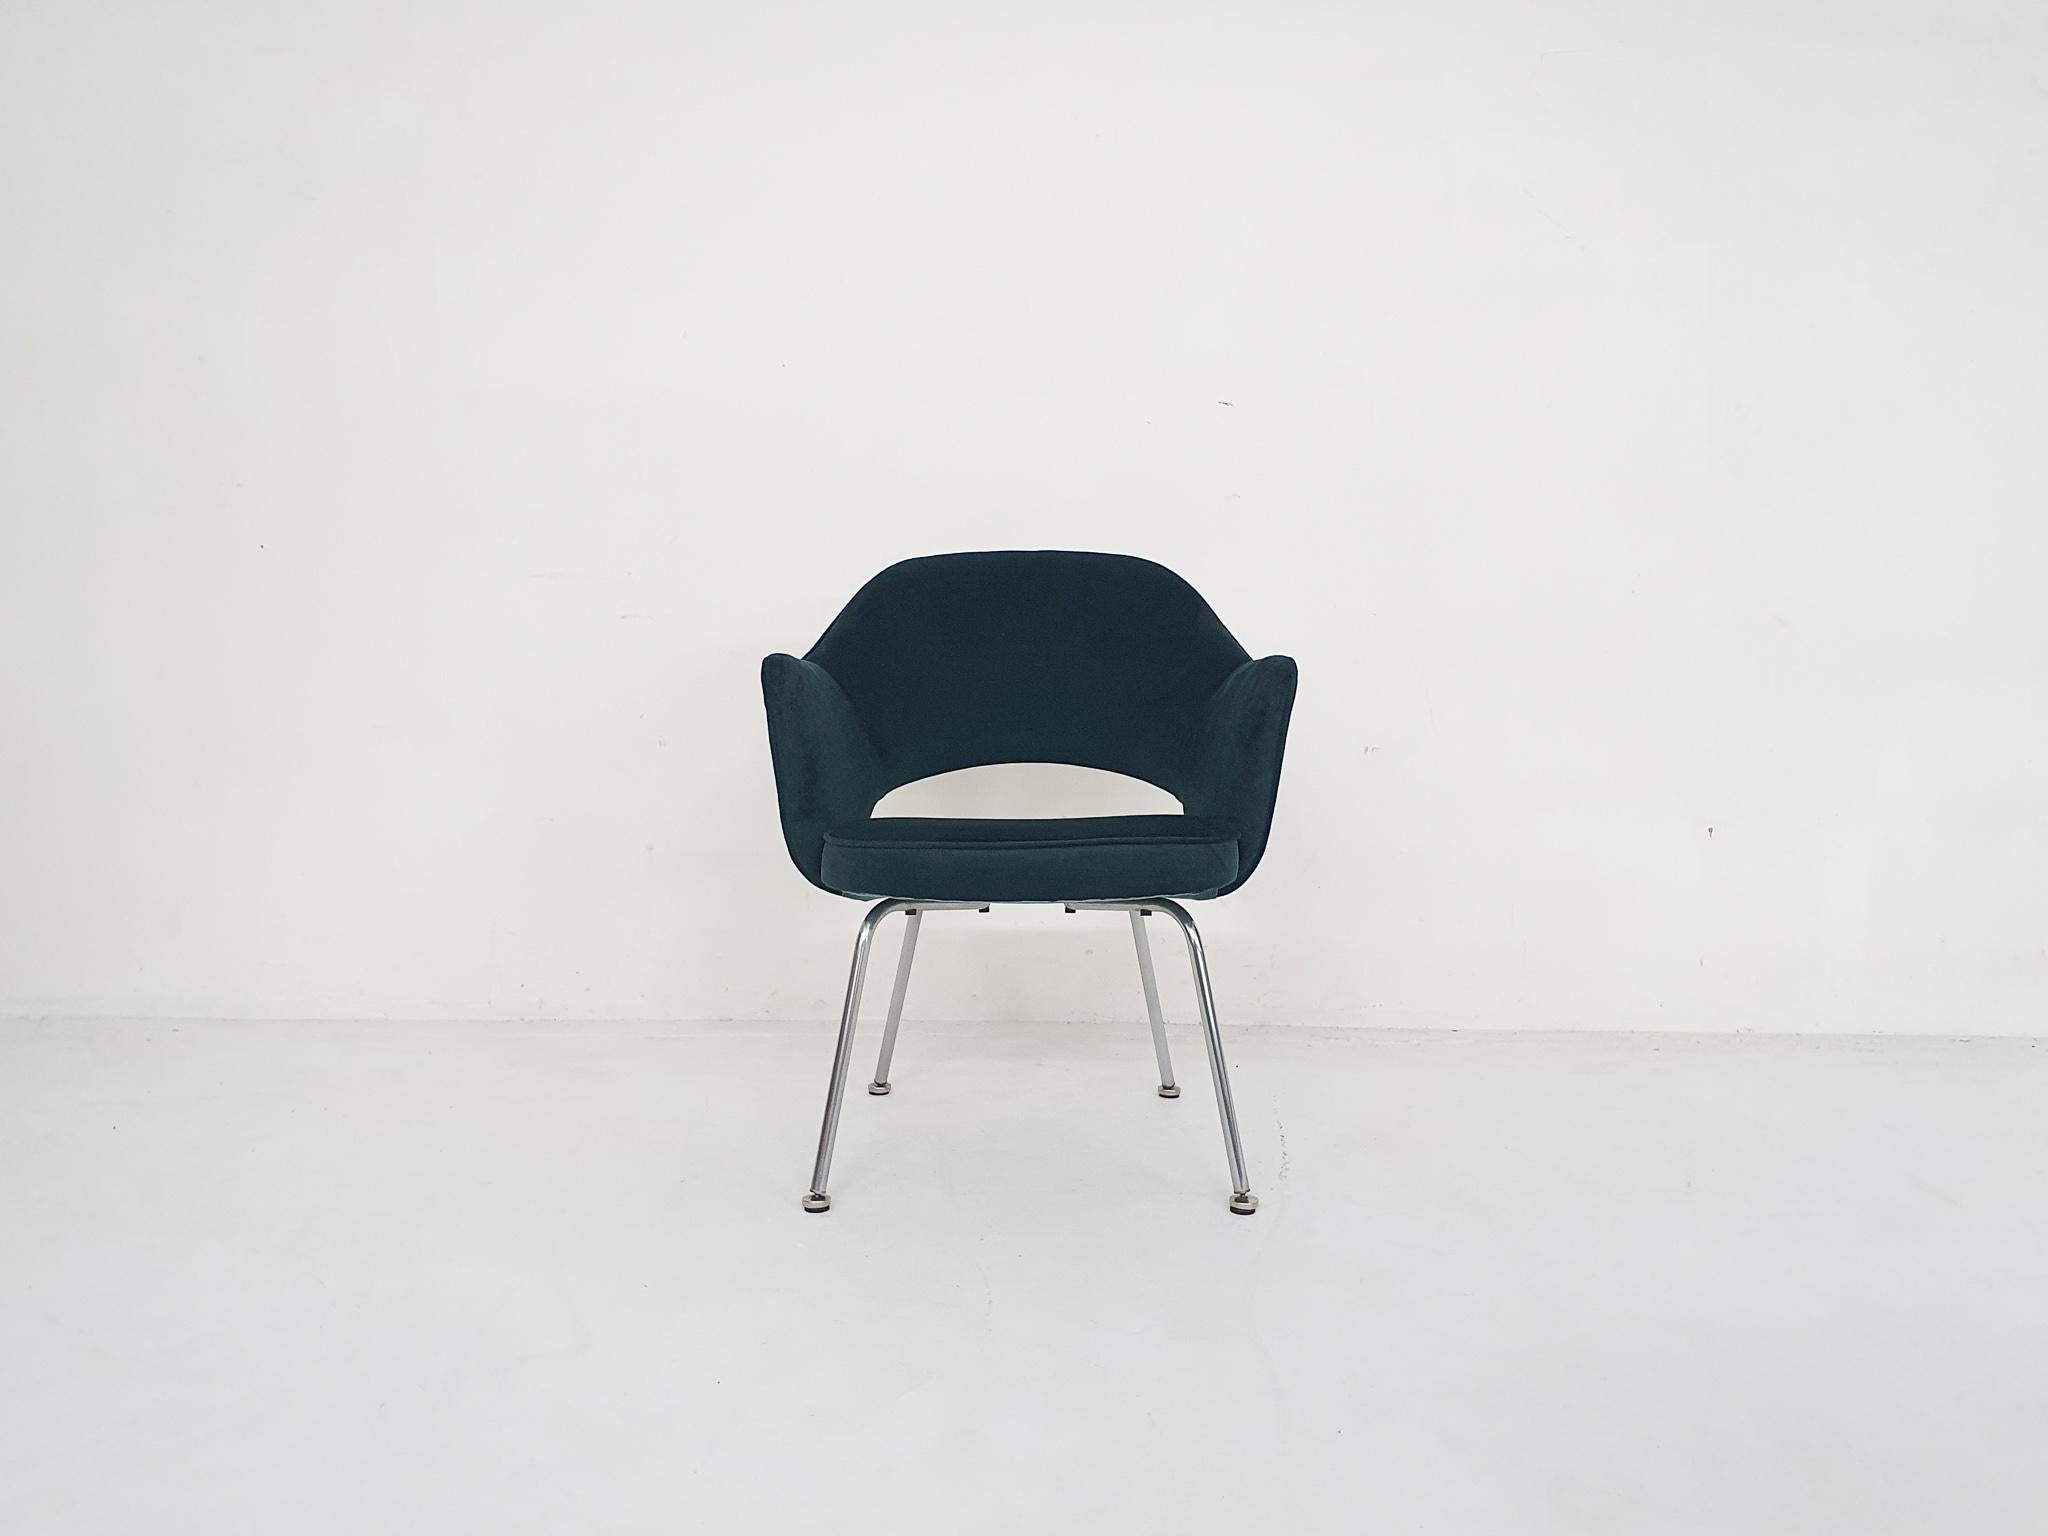 Loungesessel von Eero Saarinen für Knoll mit neuer petrolgrüner Samtbespannung.
Der Stuhl ist nicht gekennzeichnet.


Eero Saarinen ist einer der bekanntesten und anerkanntesten Designer aus der Mitte des letzten Jahrhunderts. Er war ein